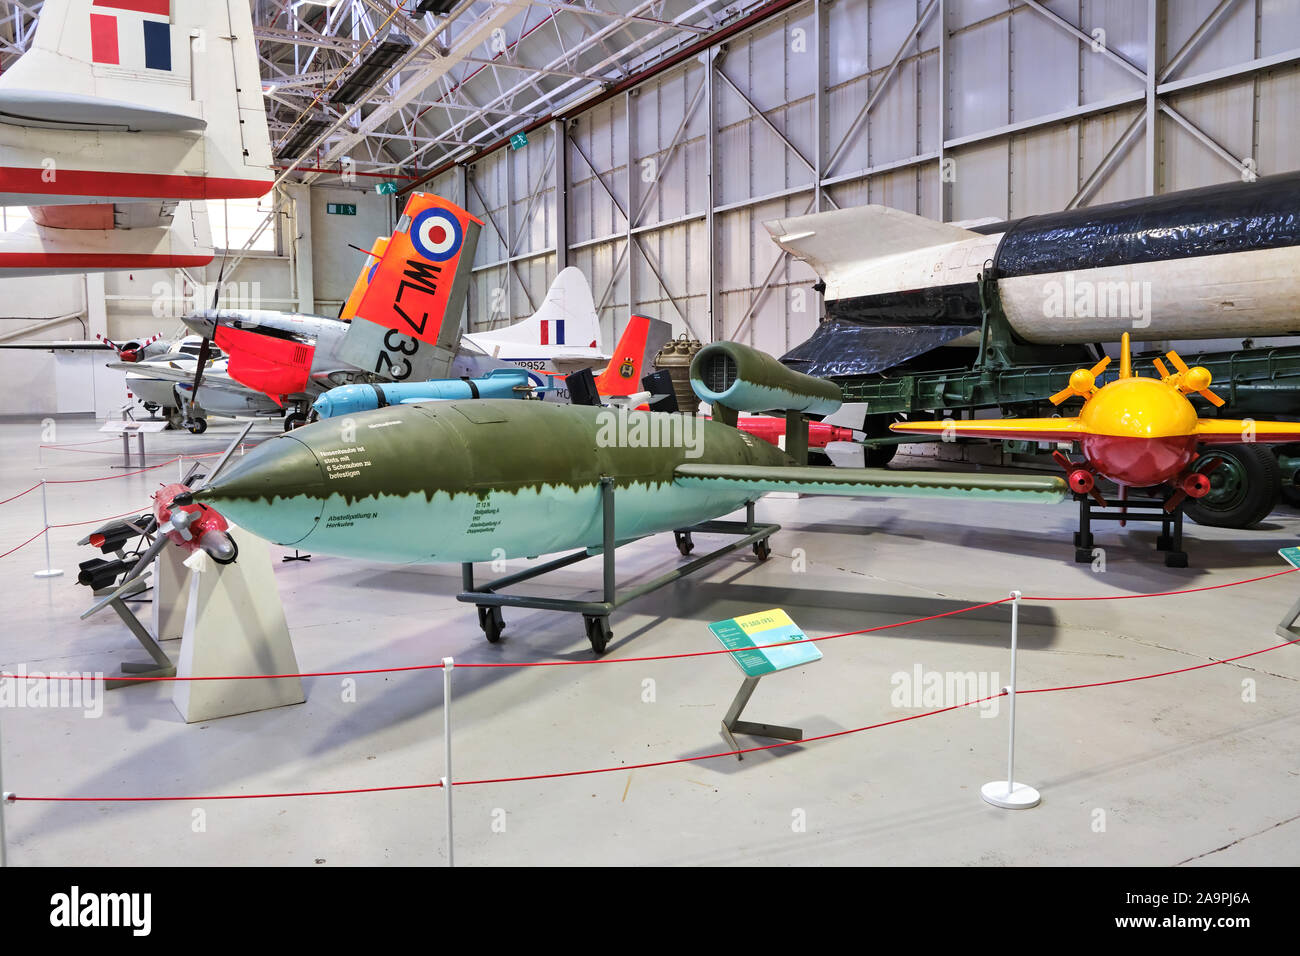 V1 fliegende Bombe Rache Waffe auch als Doodlebug oder buzz Bomb (eine frühe Cruise missile durch eine pulsejet Motor angetrieben) auf Anzeige an der RAF Cosford Air Museum in Shropshire bekannt Stockfoto